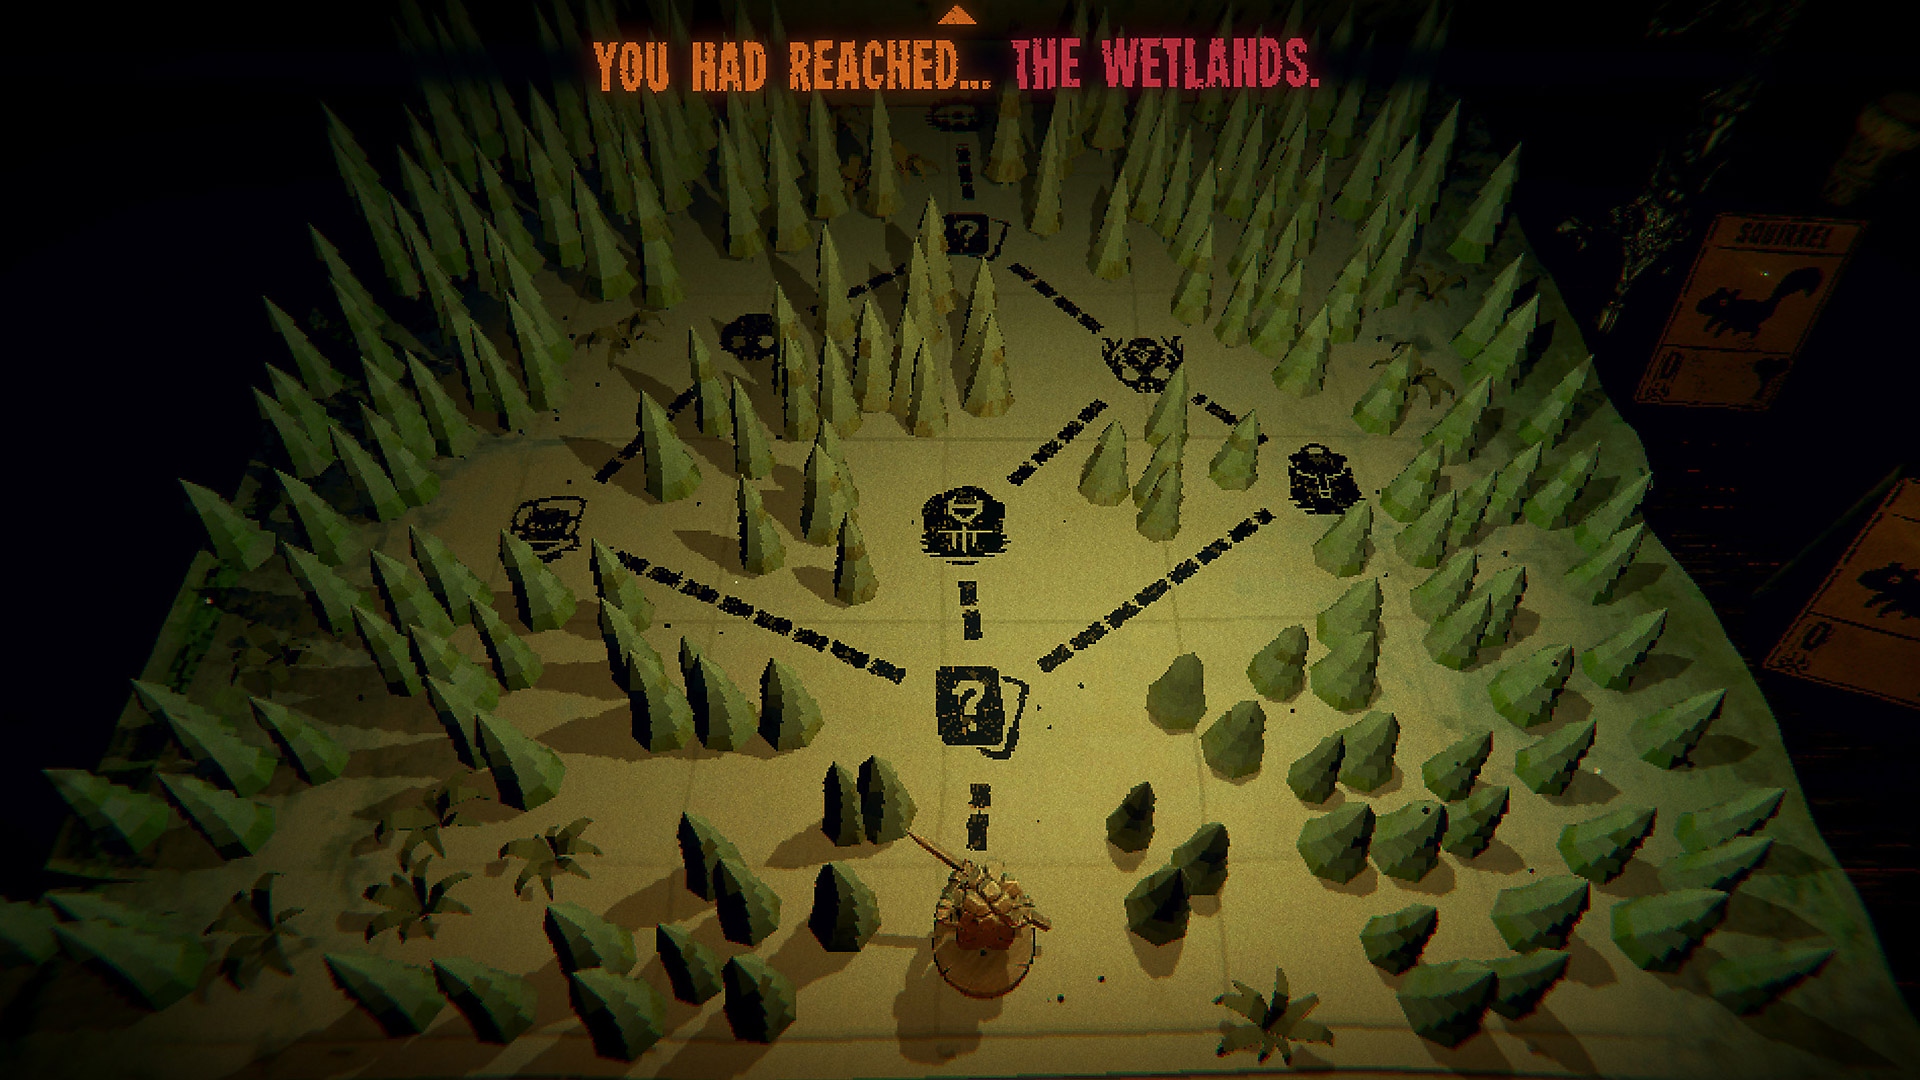 Capture d'écran du gameplay d'Inscryption montrant la carte d'une zone boisée et de plusieurs chemins conduisant entre les arbres.